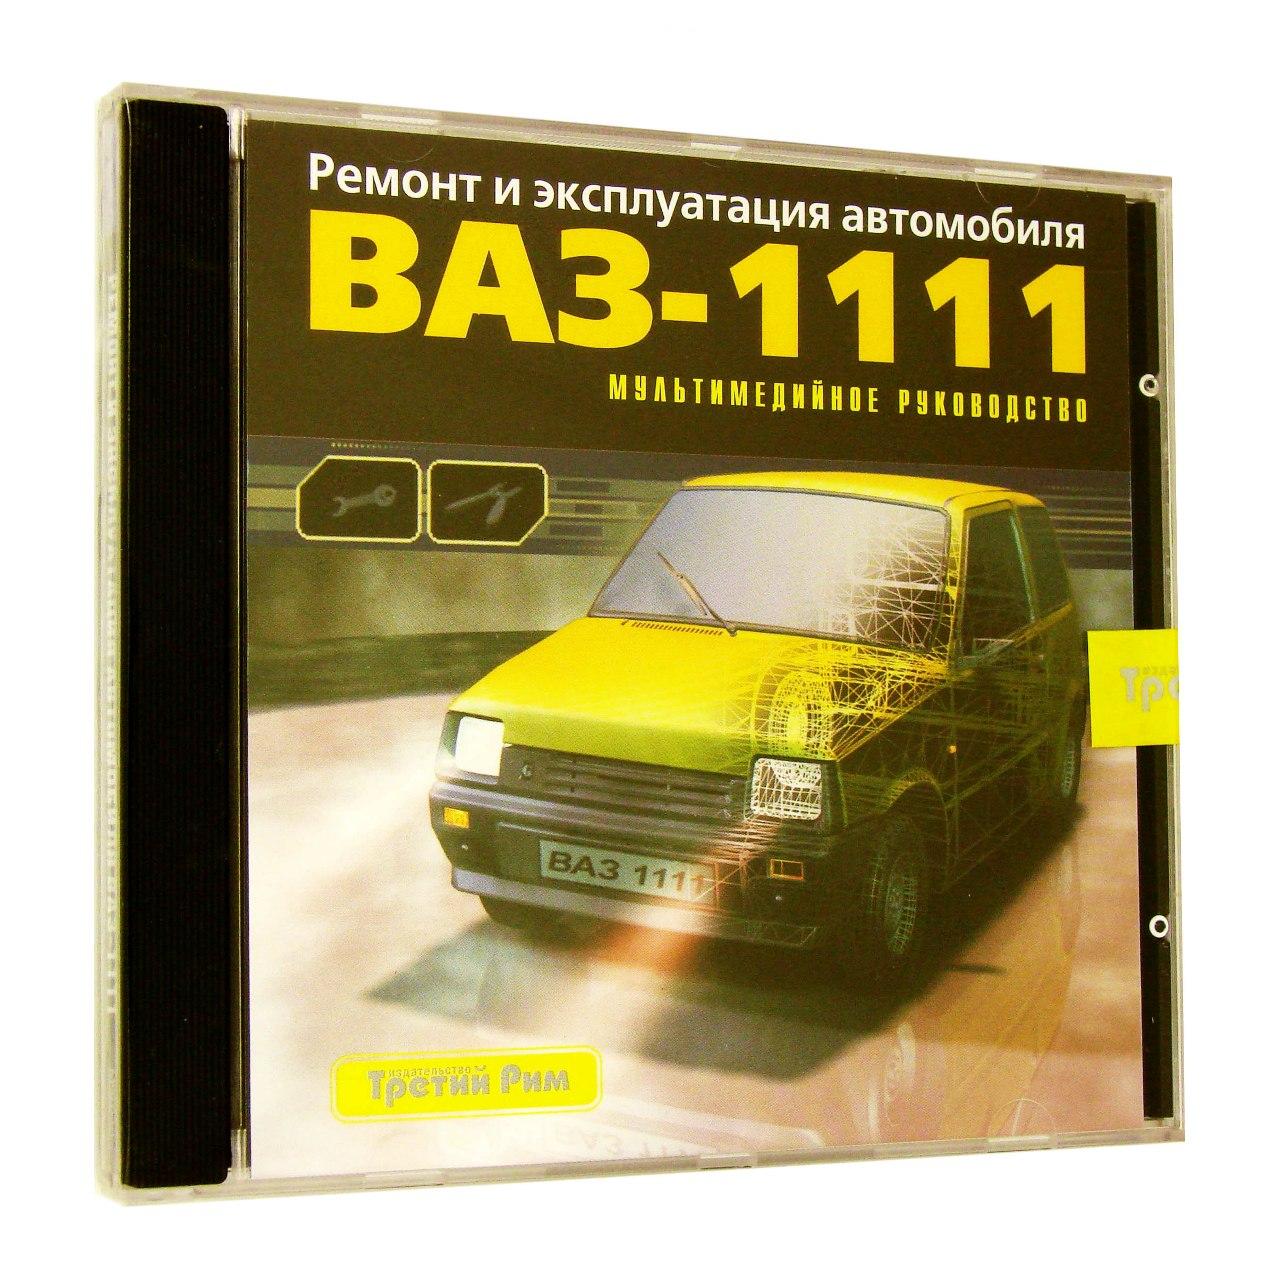 Компьютерный компакт-диск ВАЗ - 1111: ремонт и эксплуатация автомобиля (ПК), фирма "Третий Рим", 1CD